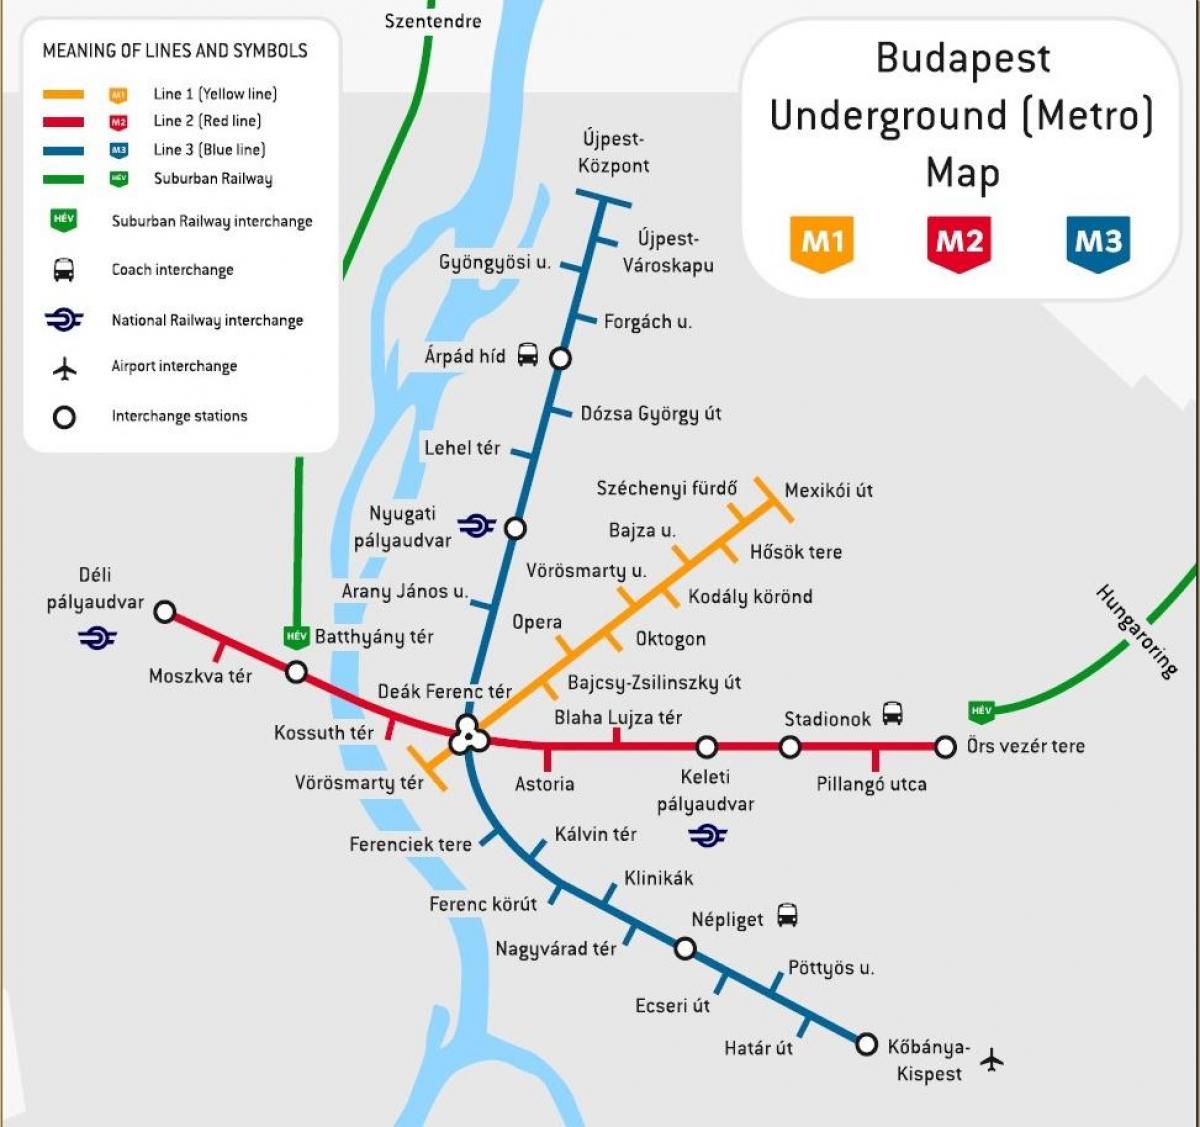 metro kat jeyografik ongri, budapest